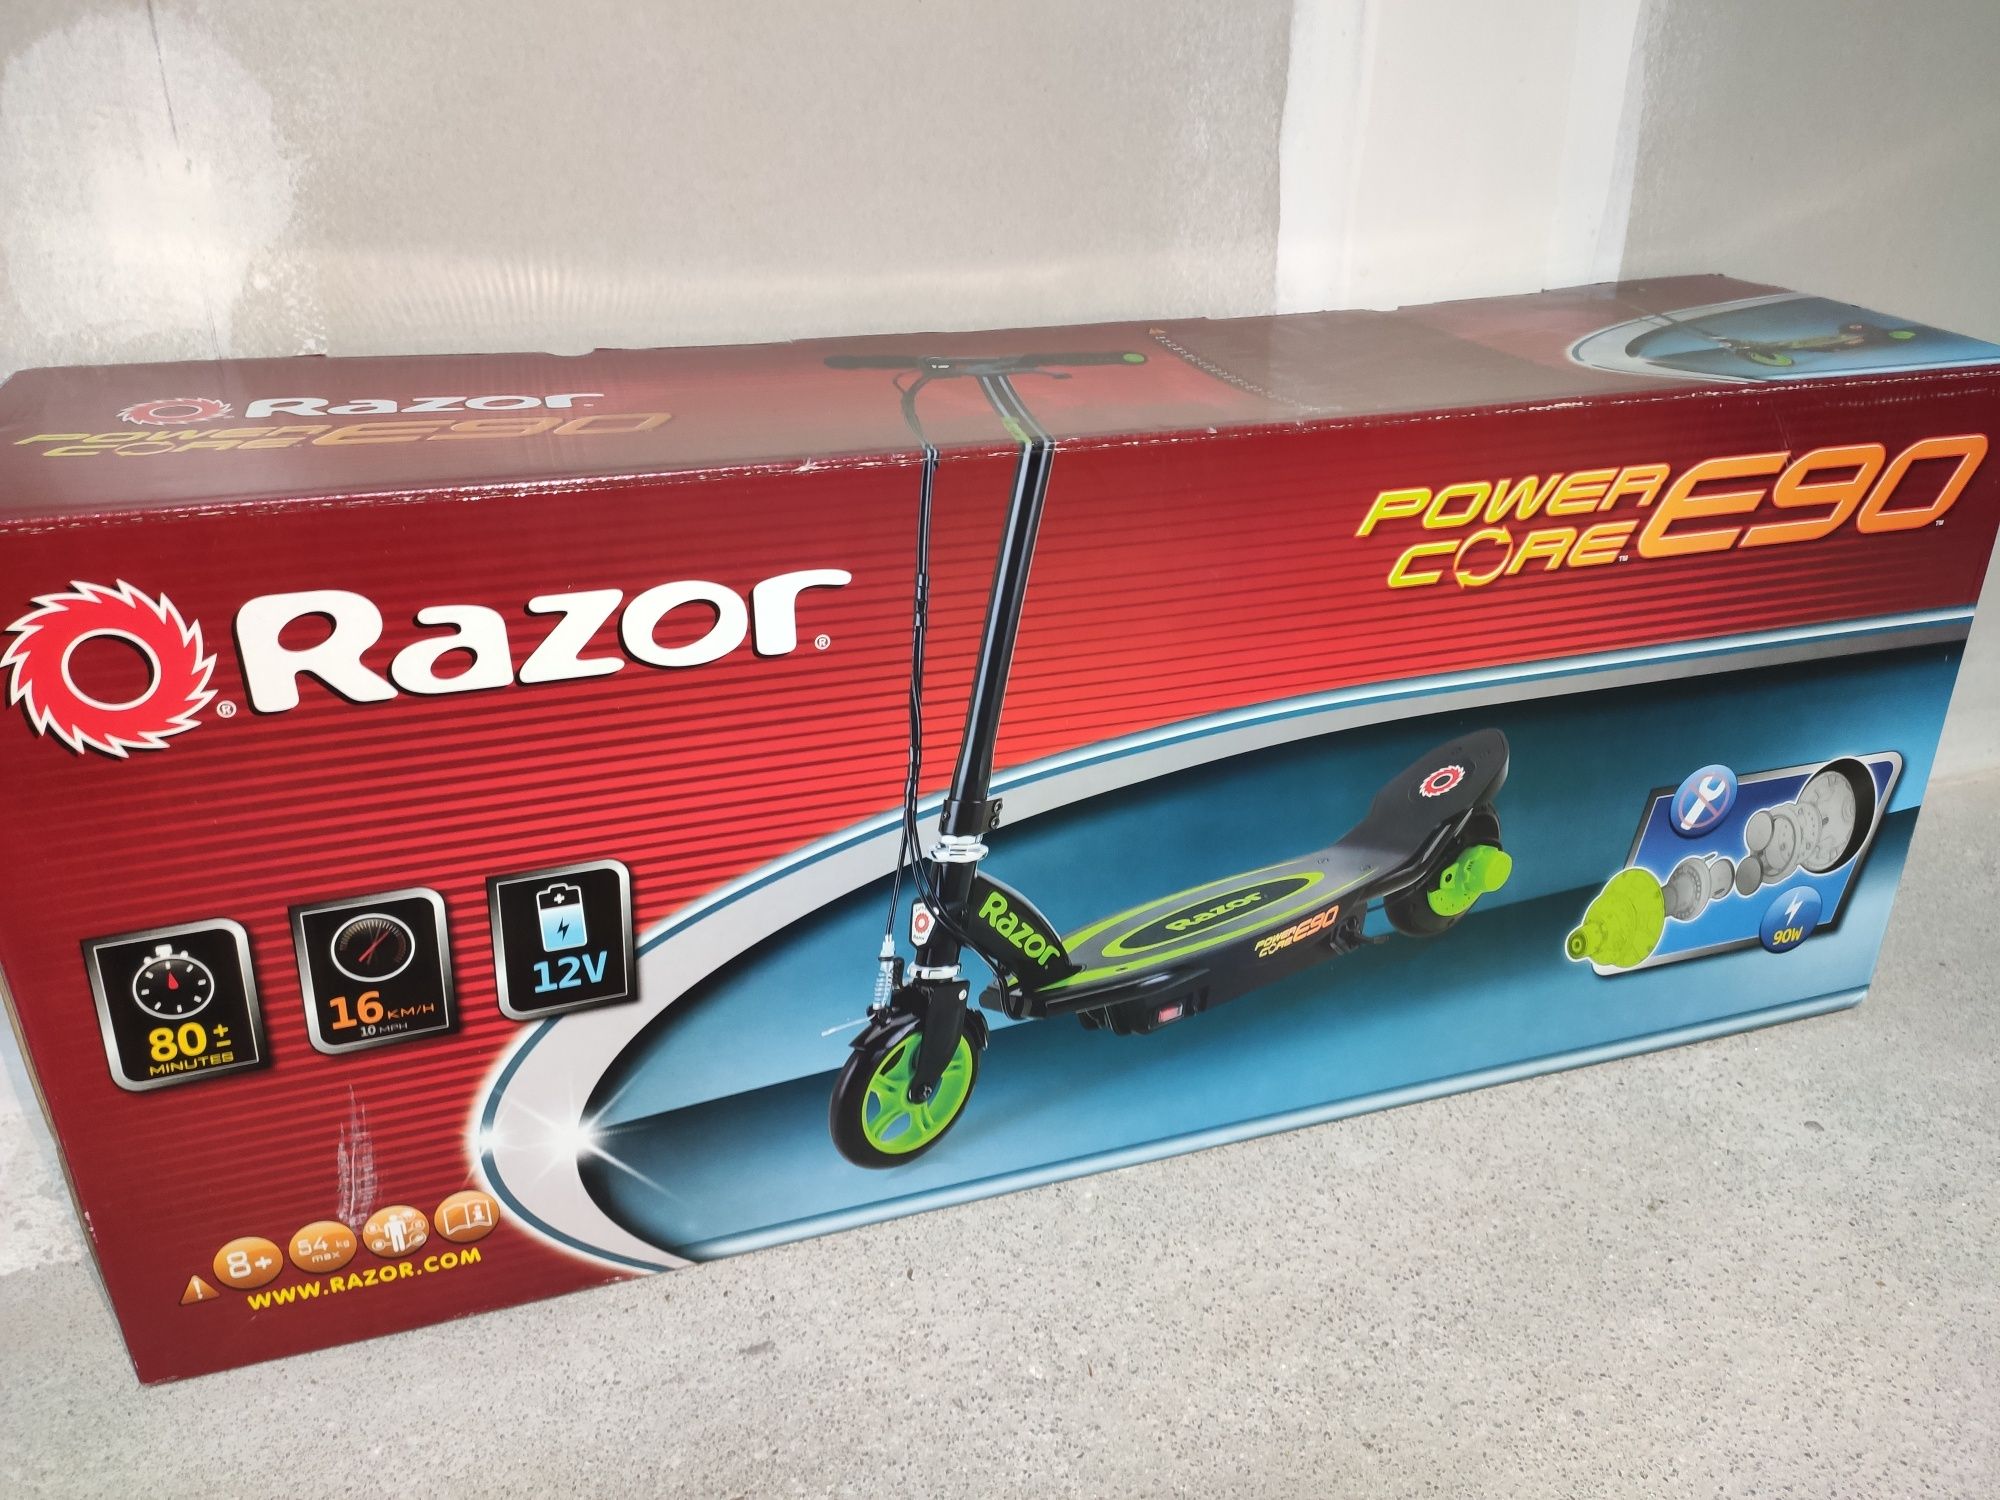 Razor Power Core E90 NOVO!